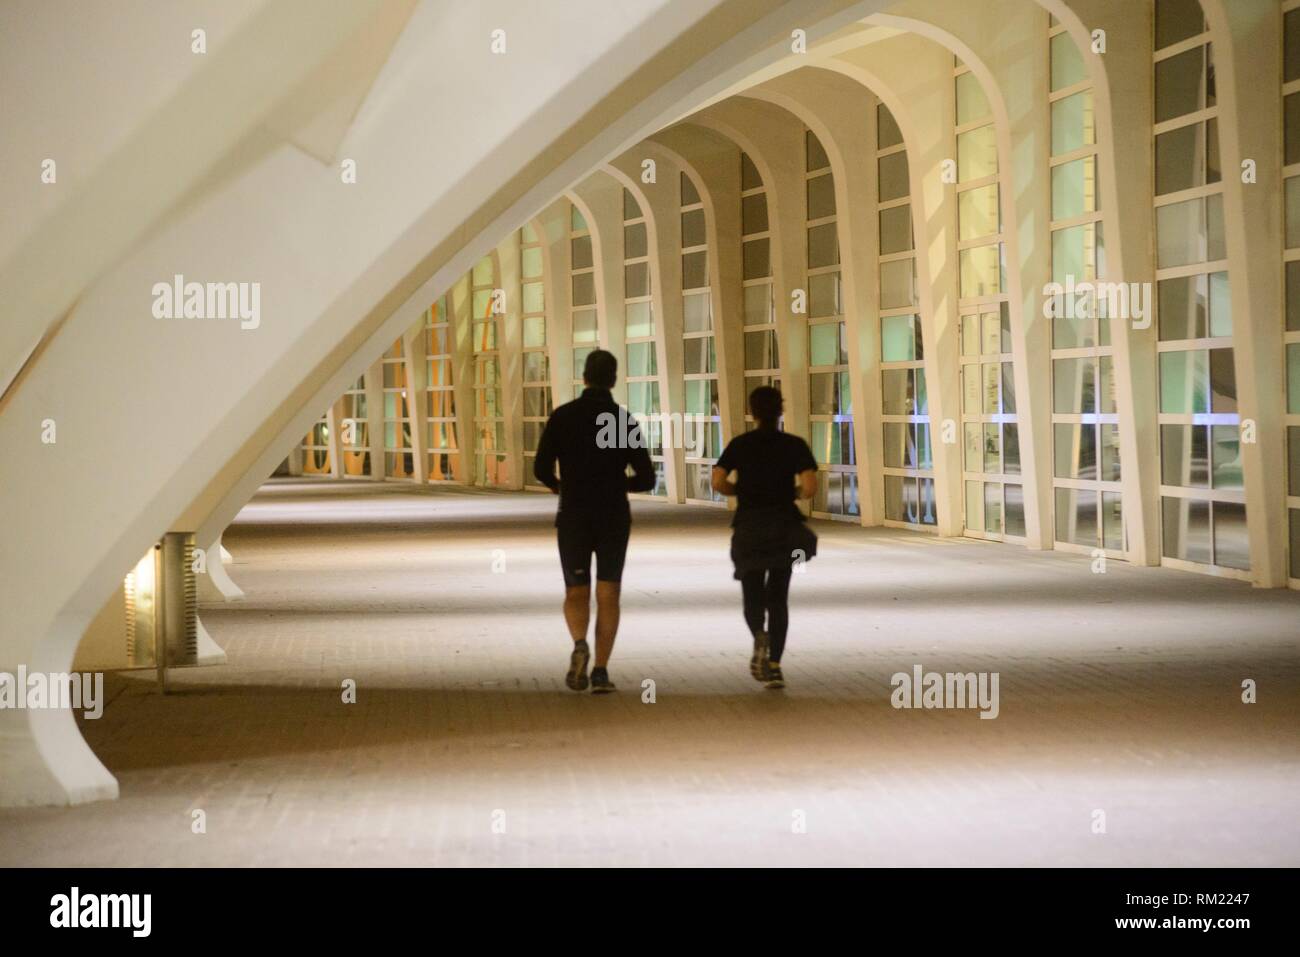 Los pasillos de la ciudad de Las ciencias son lugares idílicos para la práctica de deportes al aire libre Foto de stock